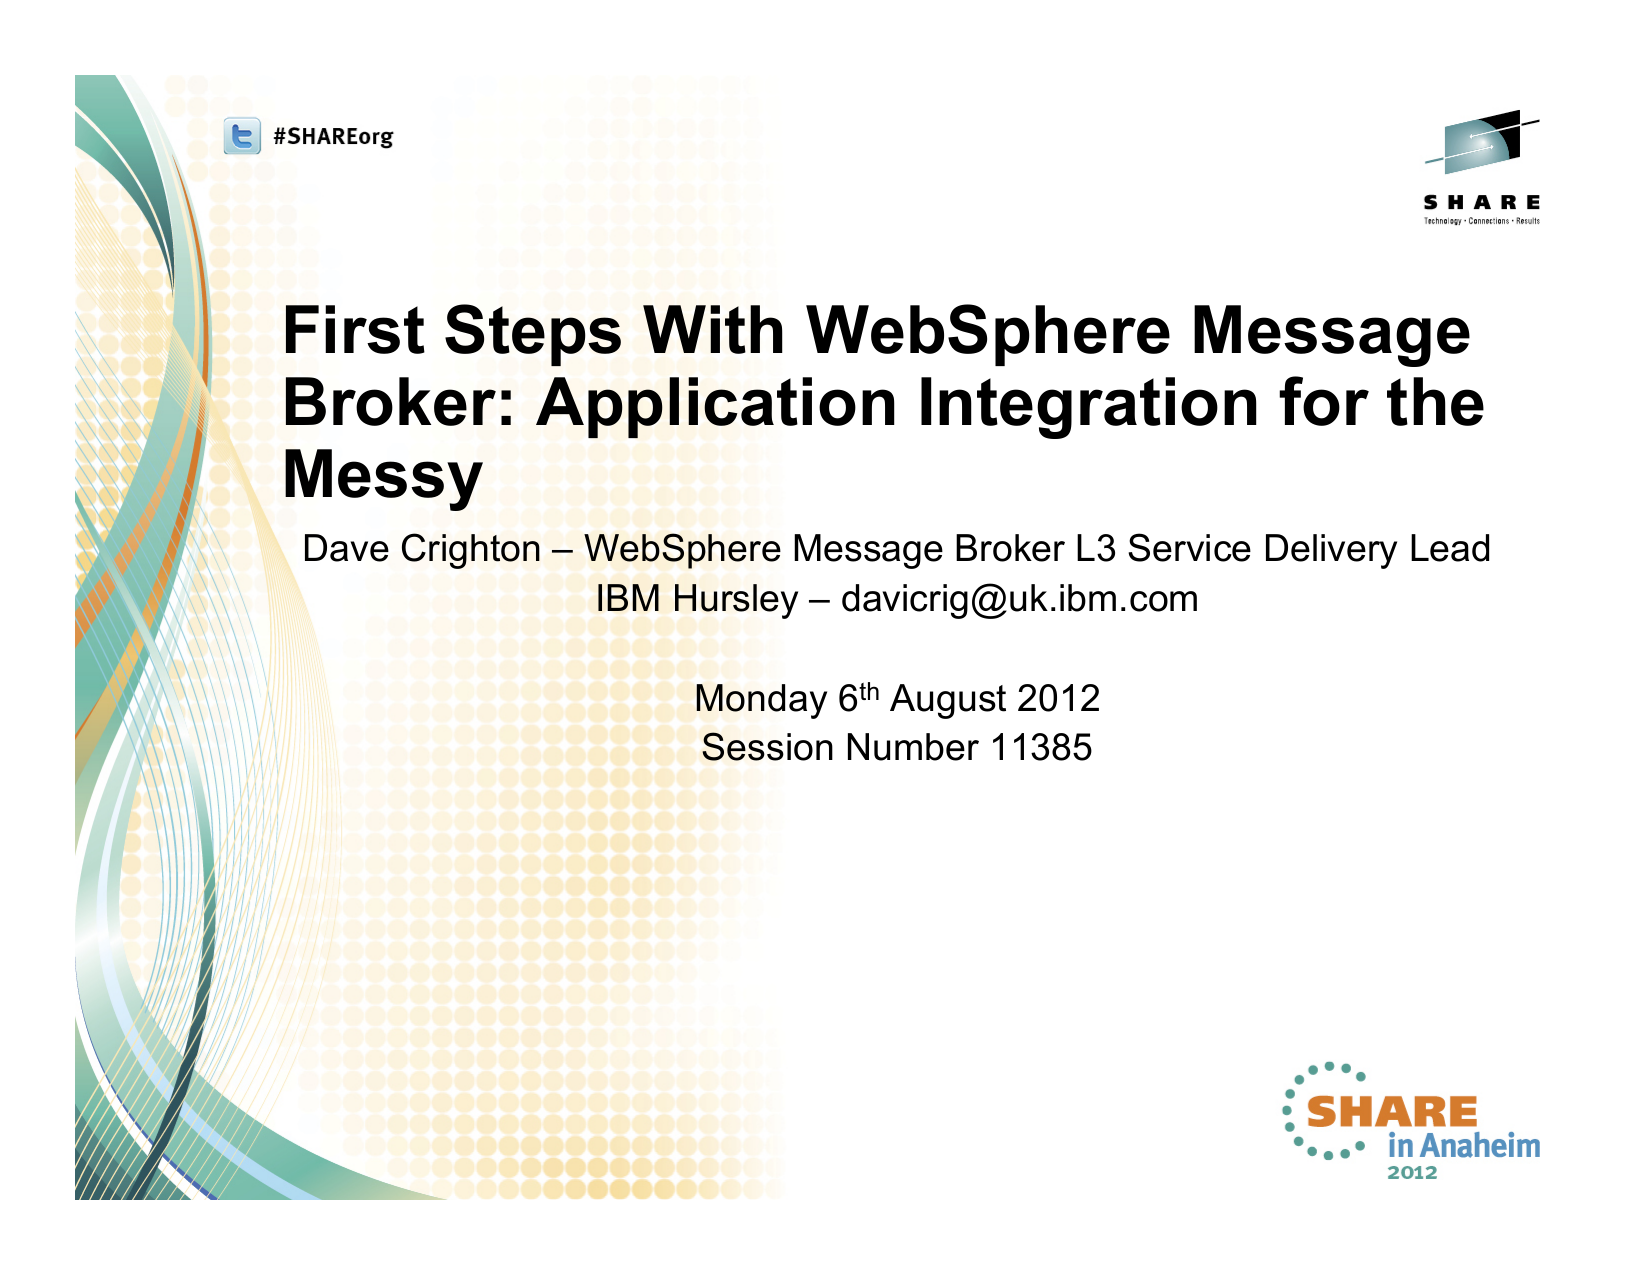 Websphere message broker jobs in india